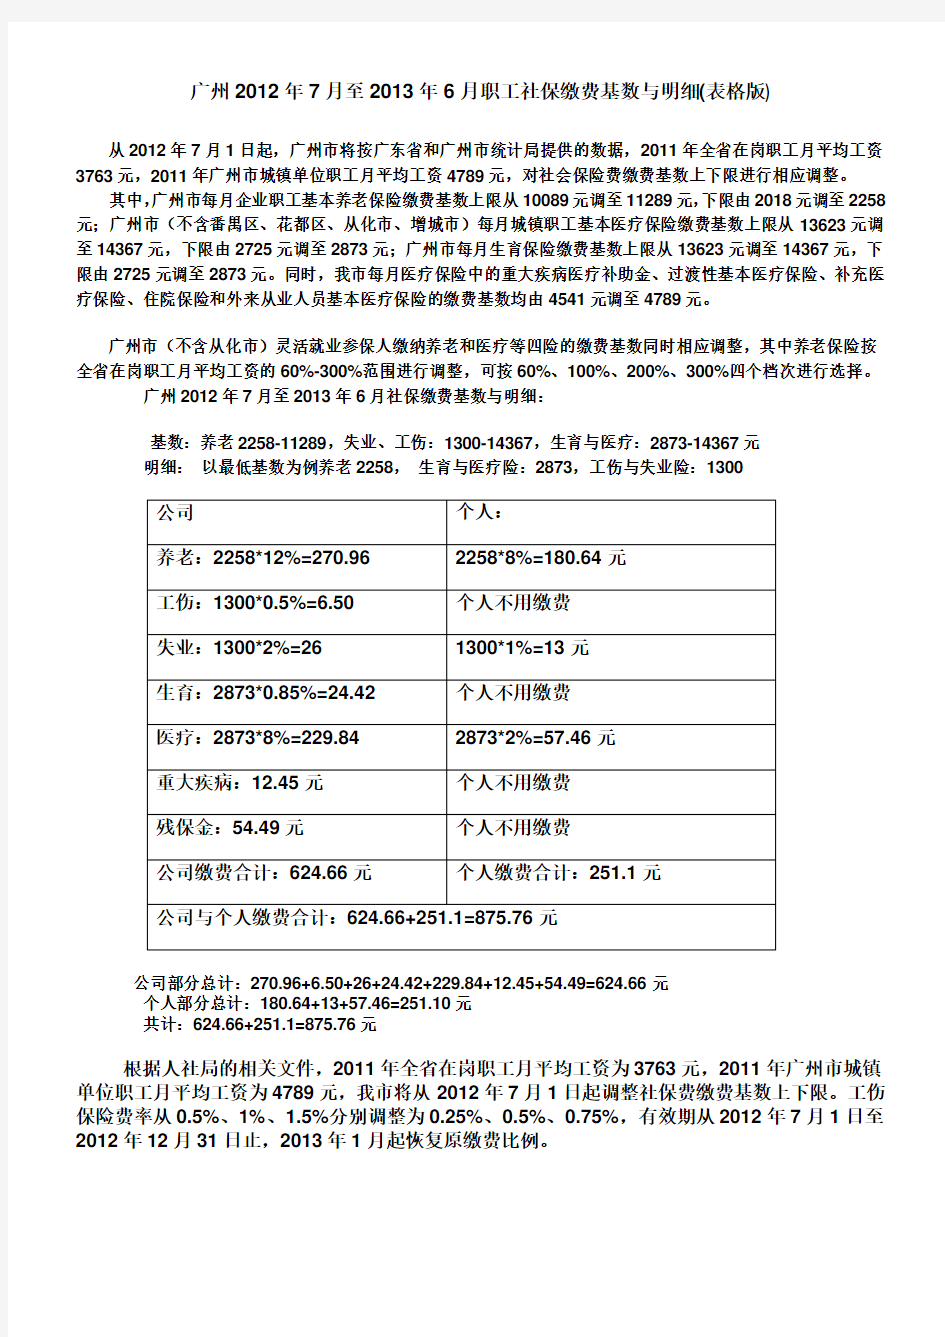 广州市2012年7月至2013年6月职工社保缴费基数与明细(最新表格说明)